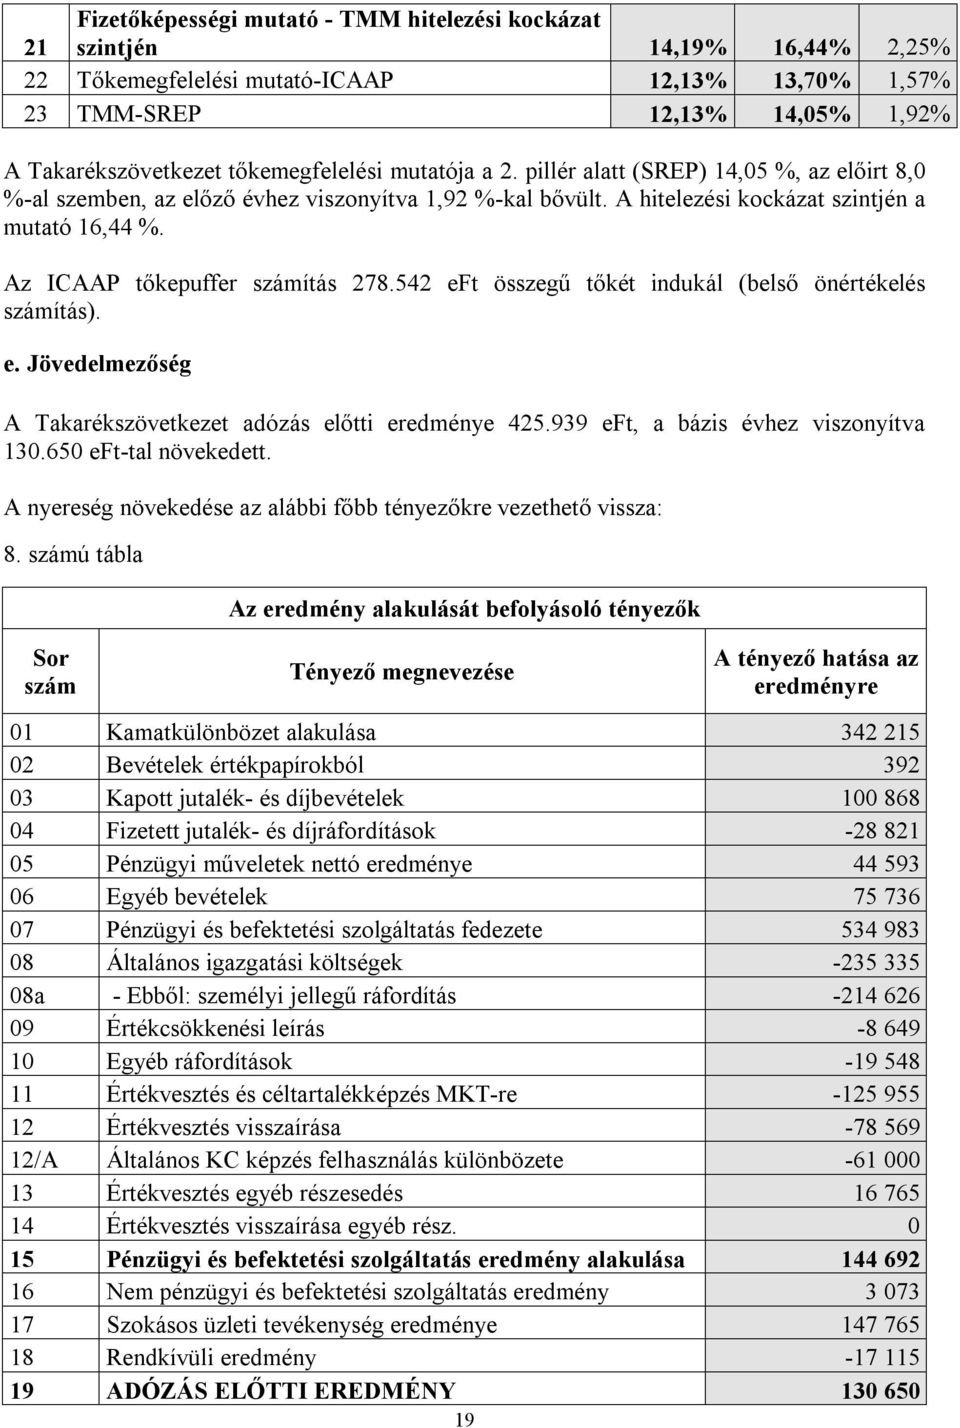 Az ICAAP tőkepuffer számítás 278.542 eft összegű tőkét indukál (belső önértékelés számítás). e. Jövedelmezőség A Takarékszövetkezet adózás előtti eredménye 425.939 eft, a bázis évhez viszonyítva 130.